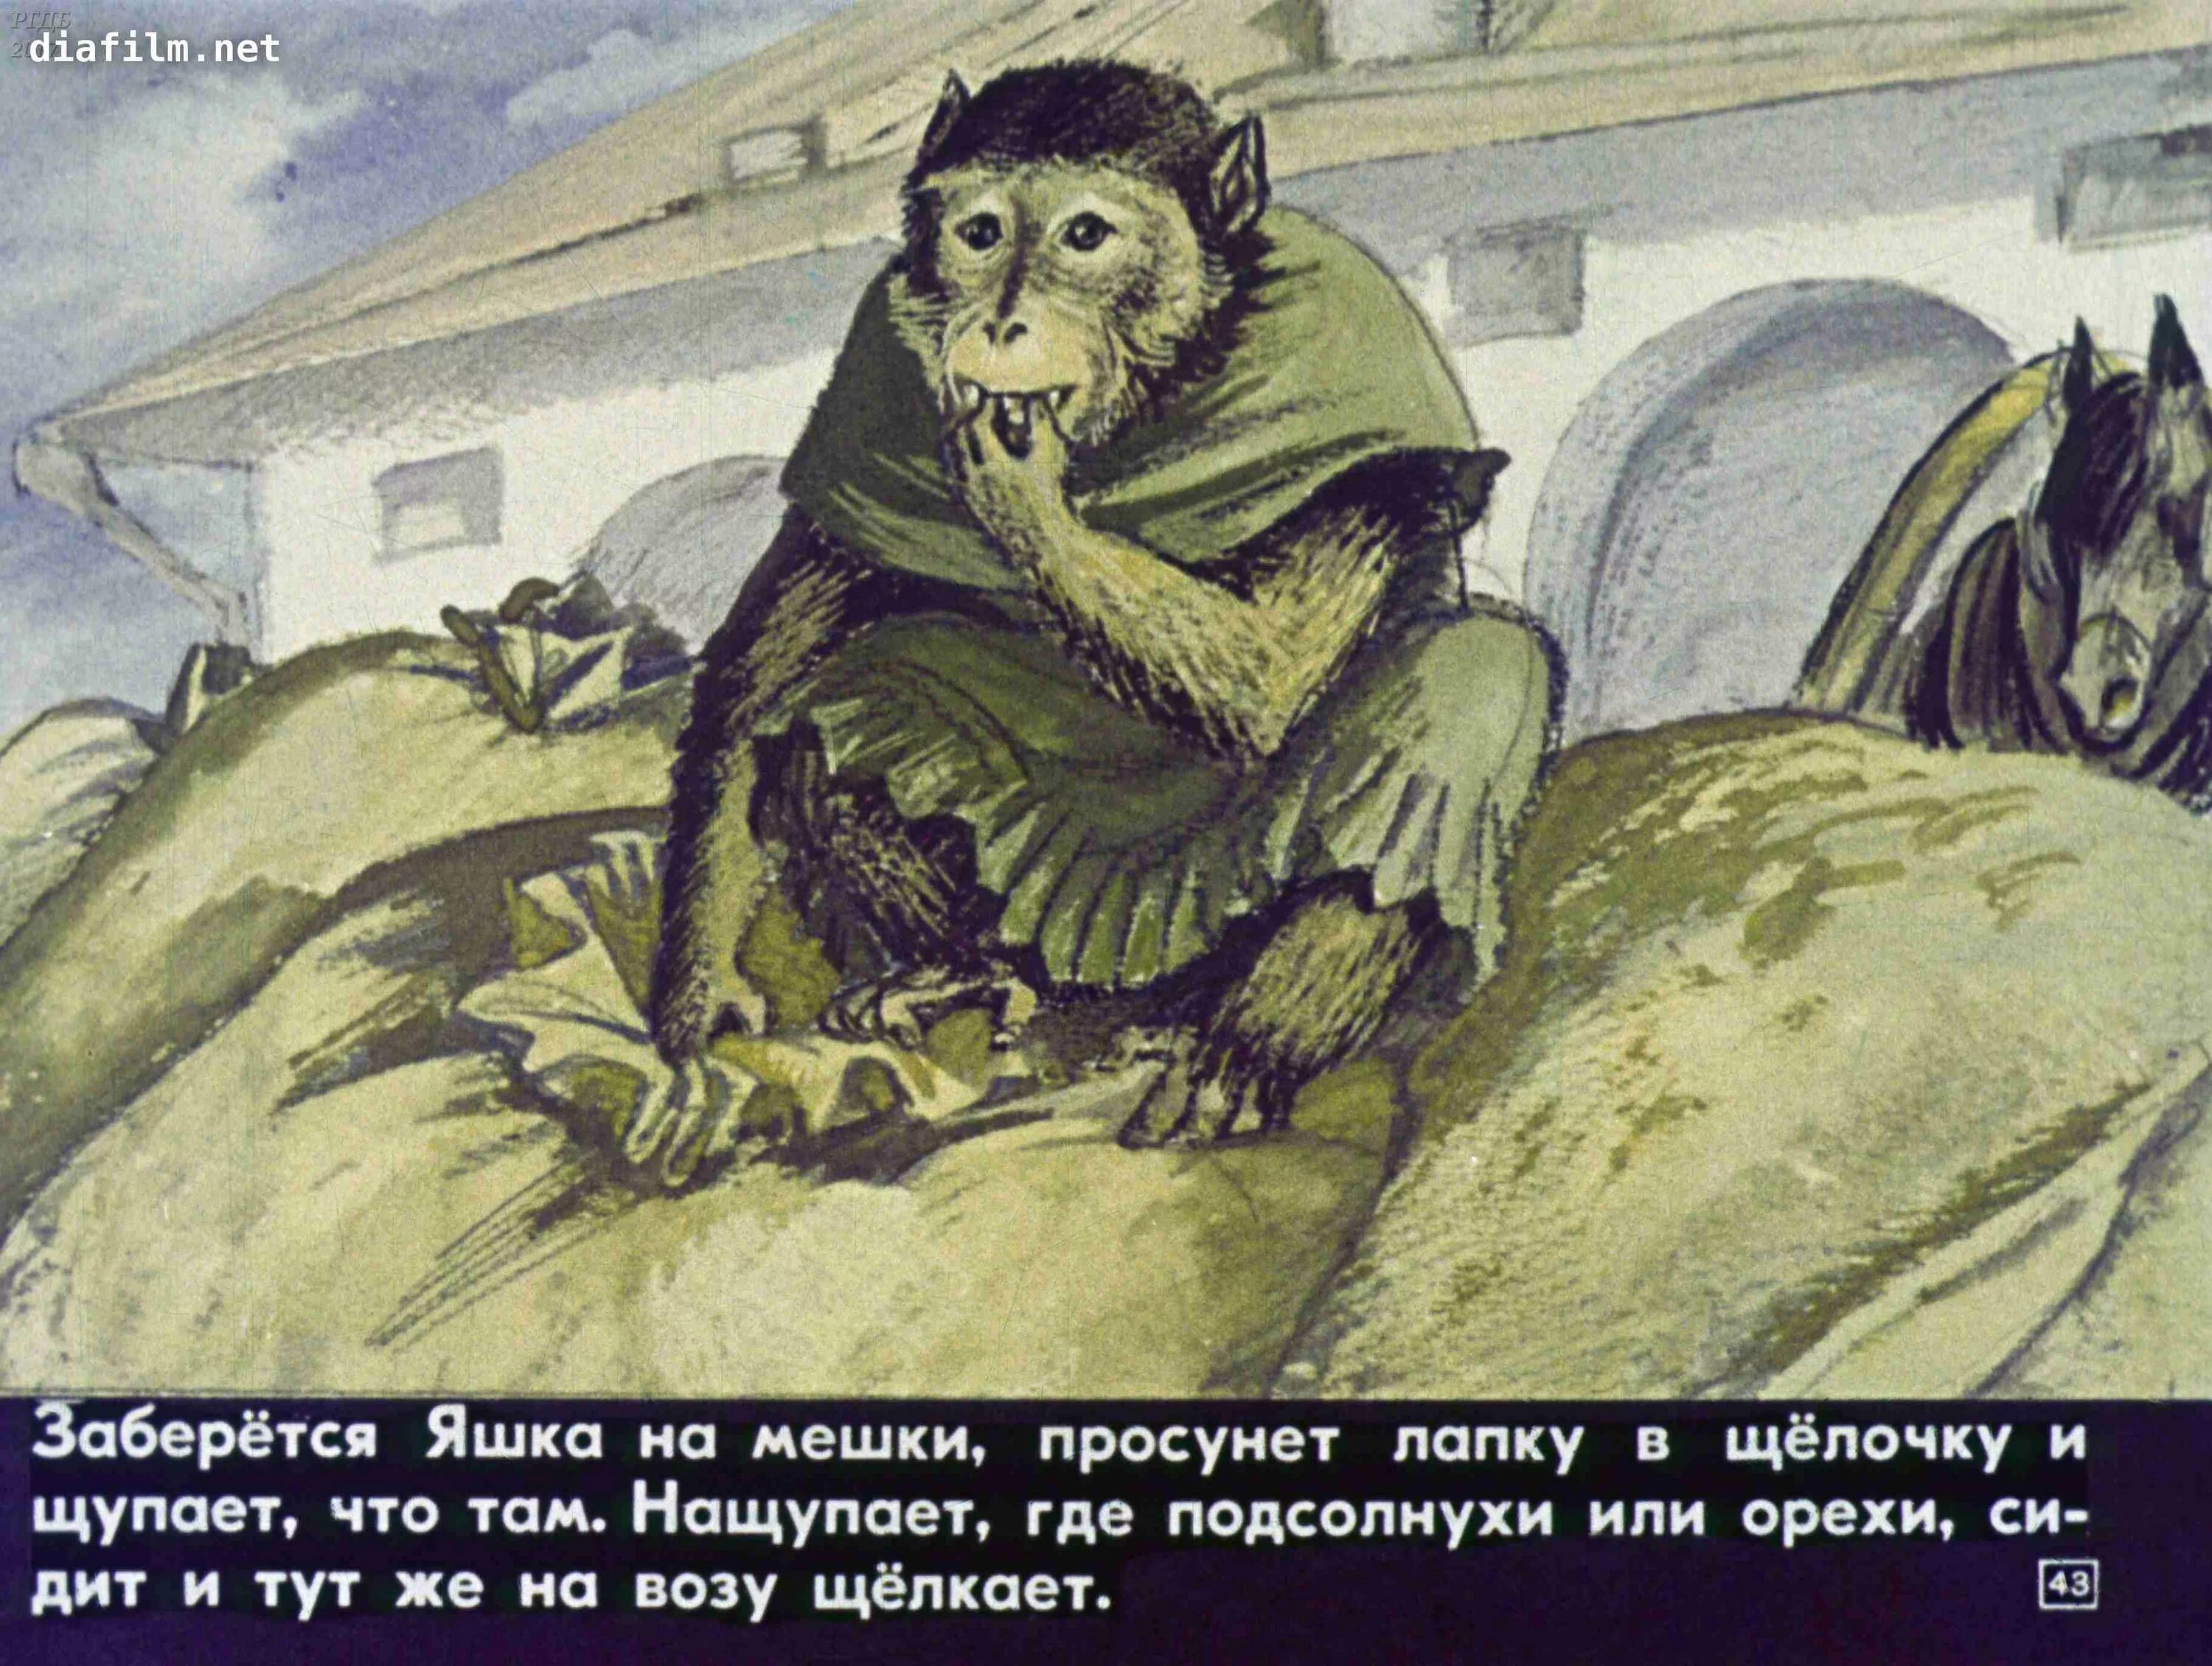 Иллюстрация к произведению б Житкова про обезьянку. Б Житков про обезьянку. Аудиосказка про обезьянку